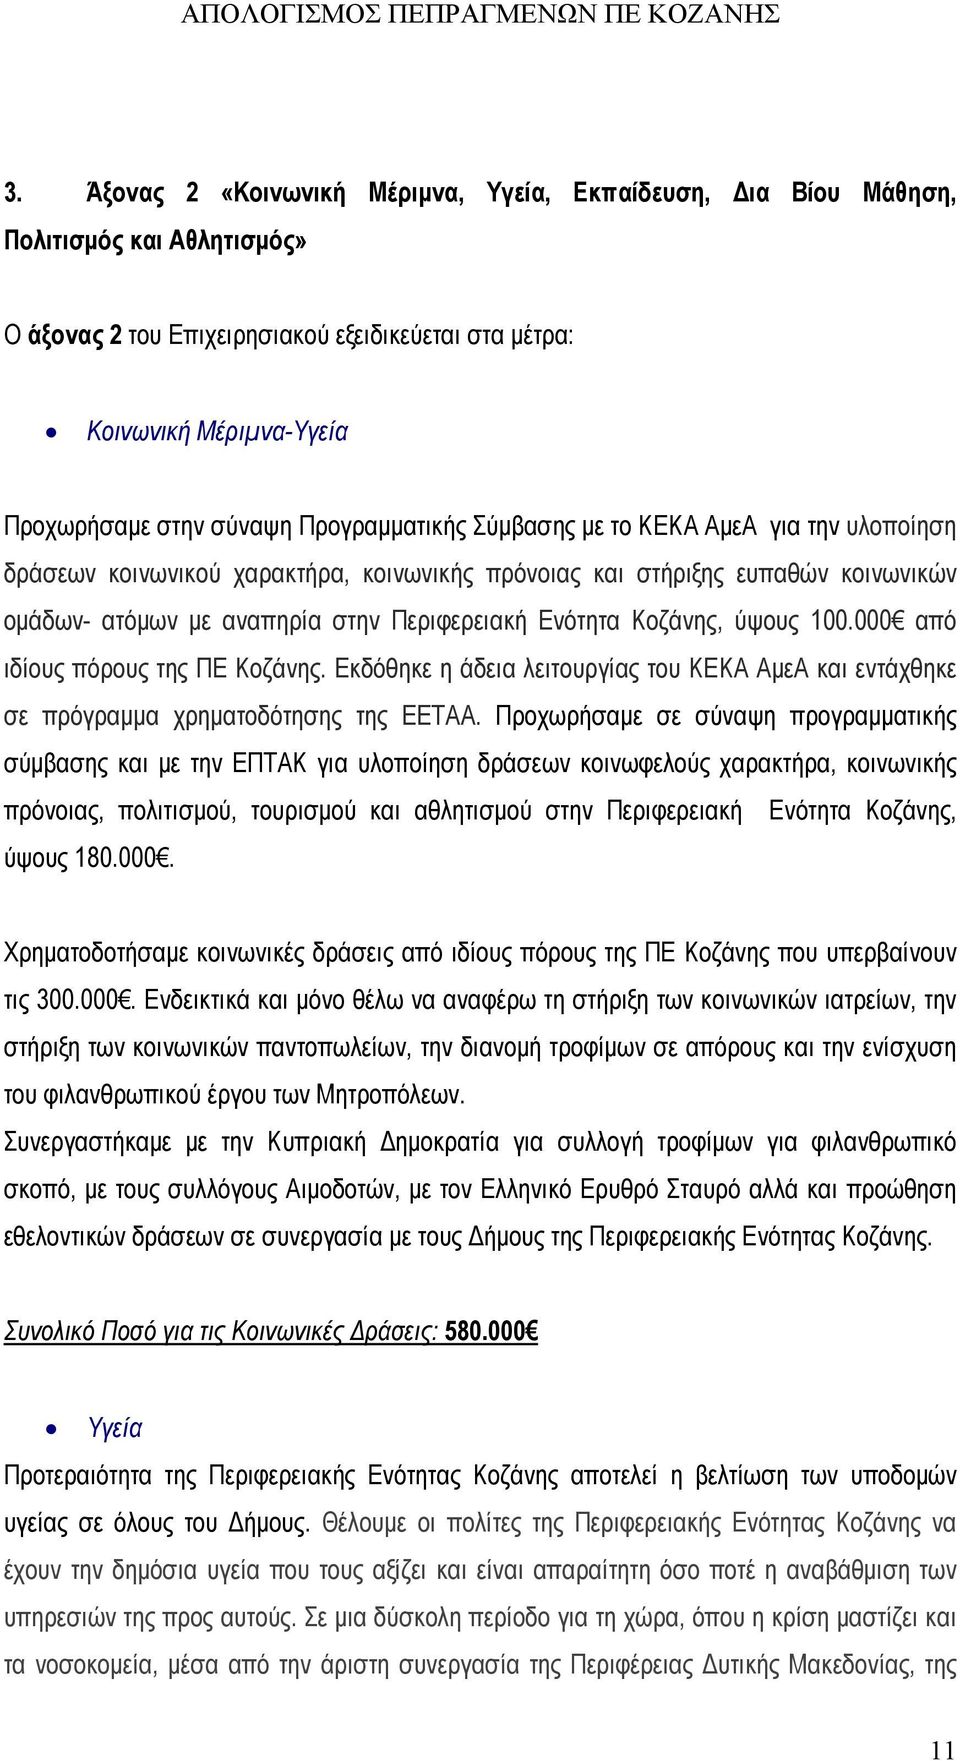 Κοζάνης, ύψους 100.000 από ιδίους πόρους της ΠΕ Κοζάνης. Εκδόθηκε η άδεια λειτουργίας του ΚΕΚΑ ΑμεΑ και εντάχθηκε σε πρόγραμμα χρηματοδότησης της ΕΕΤΑΑ.